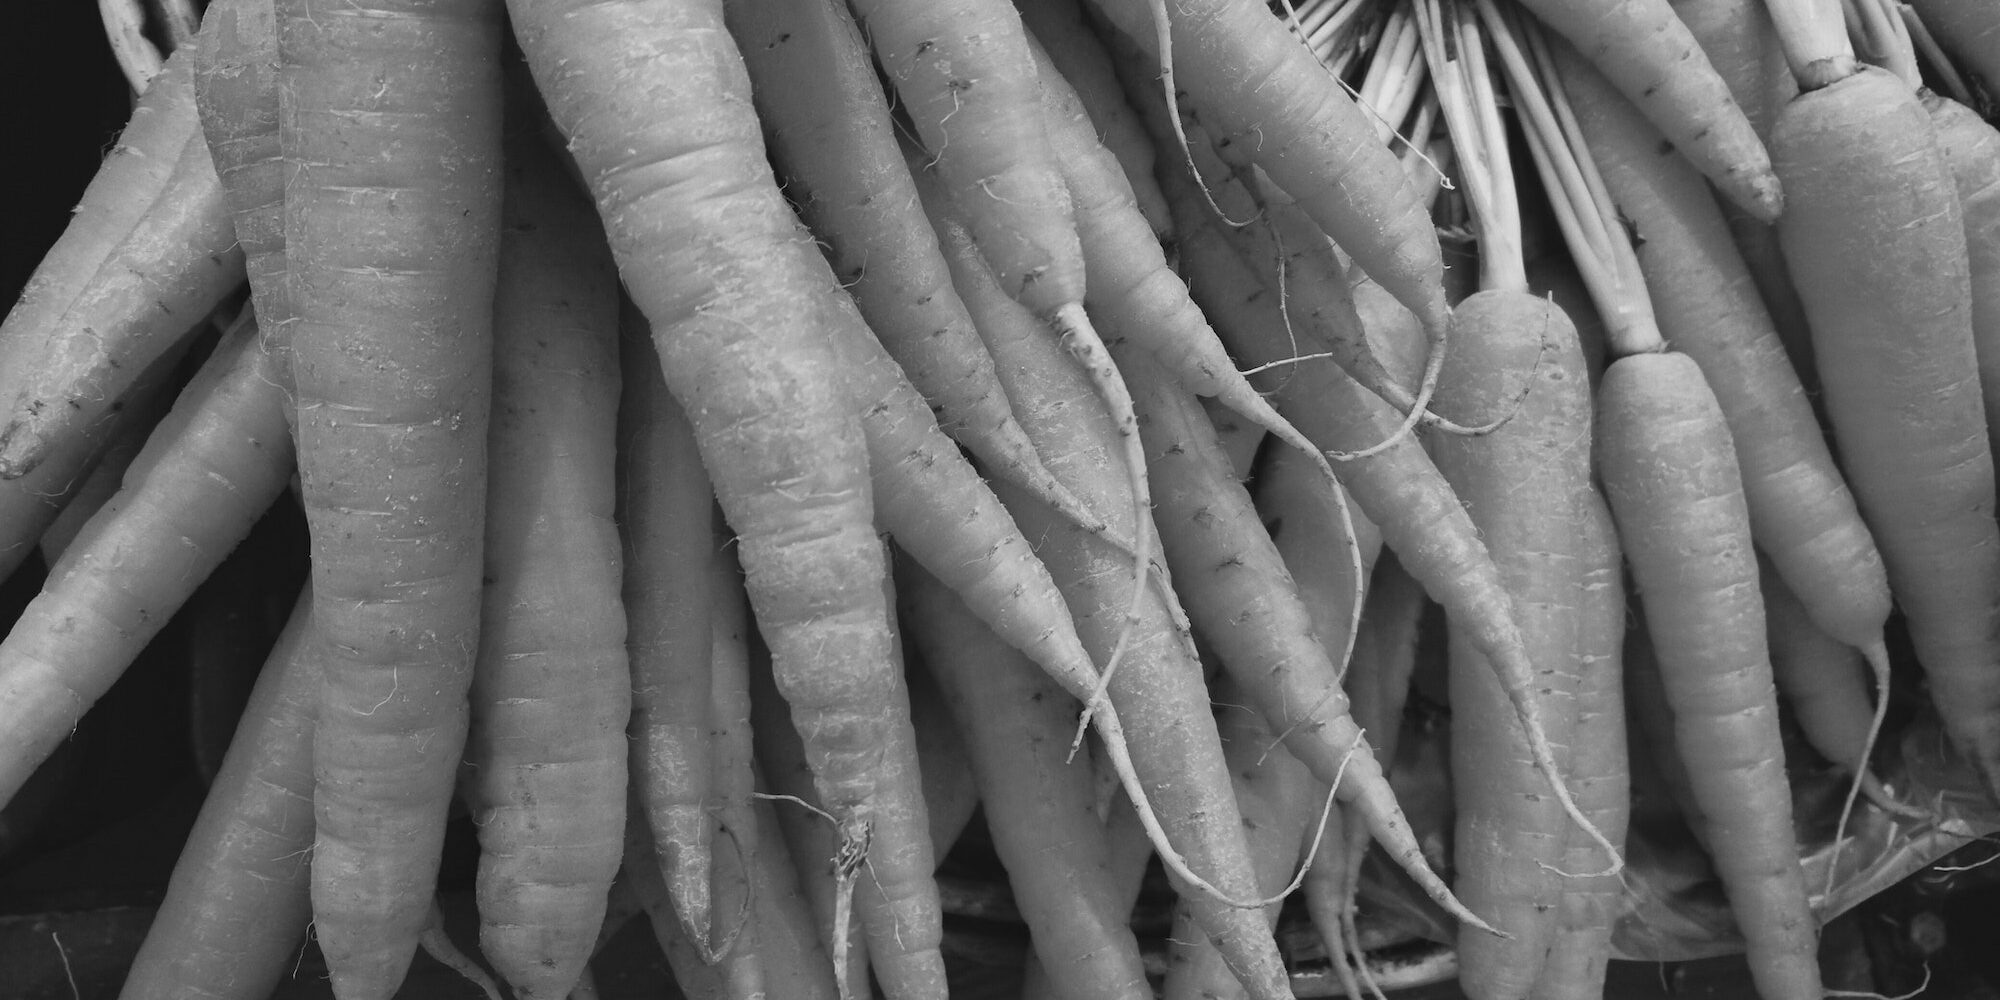 Closeup of carrots